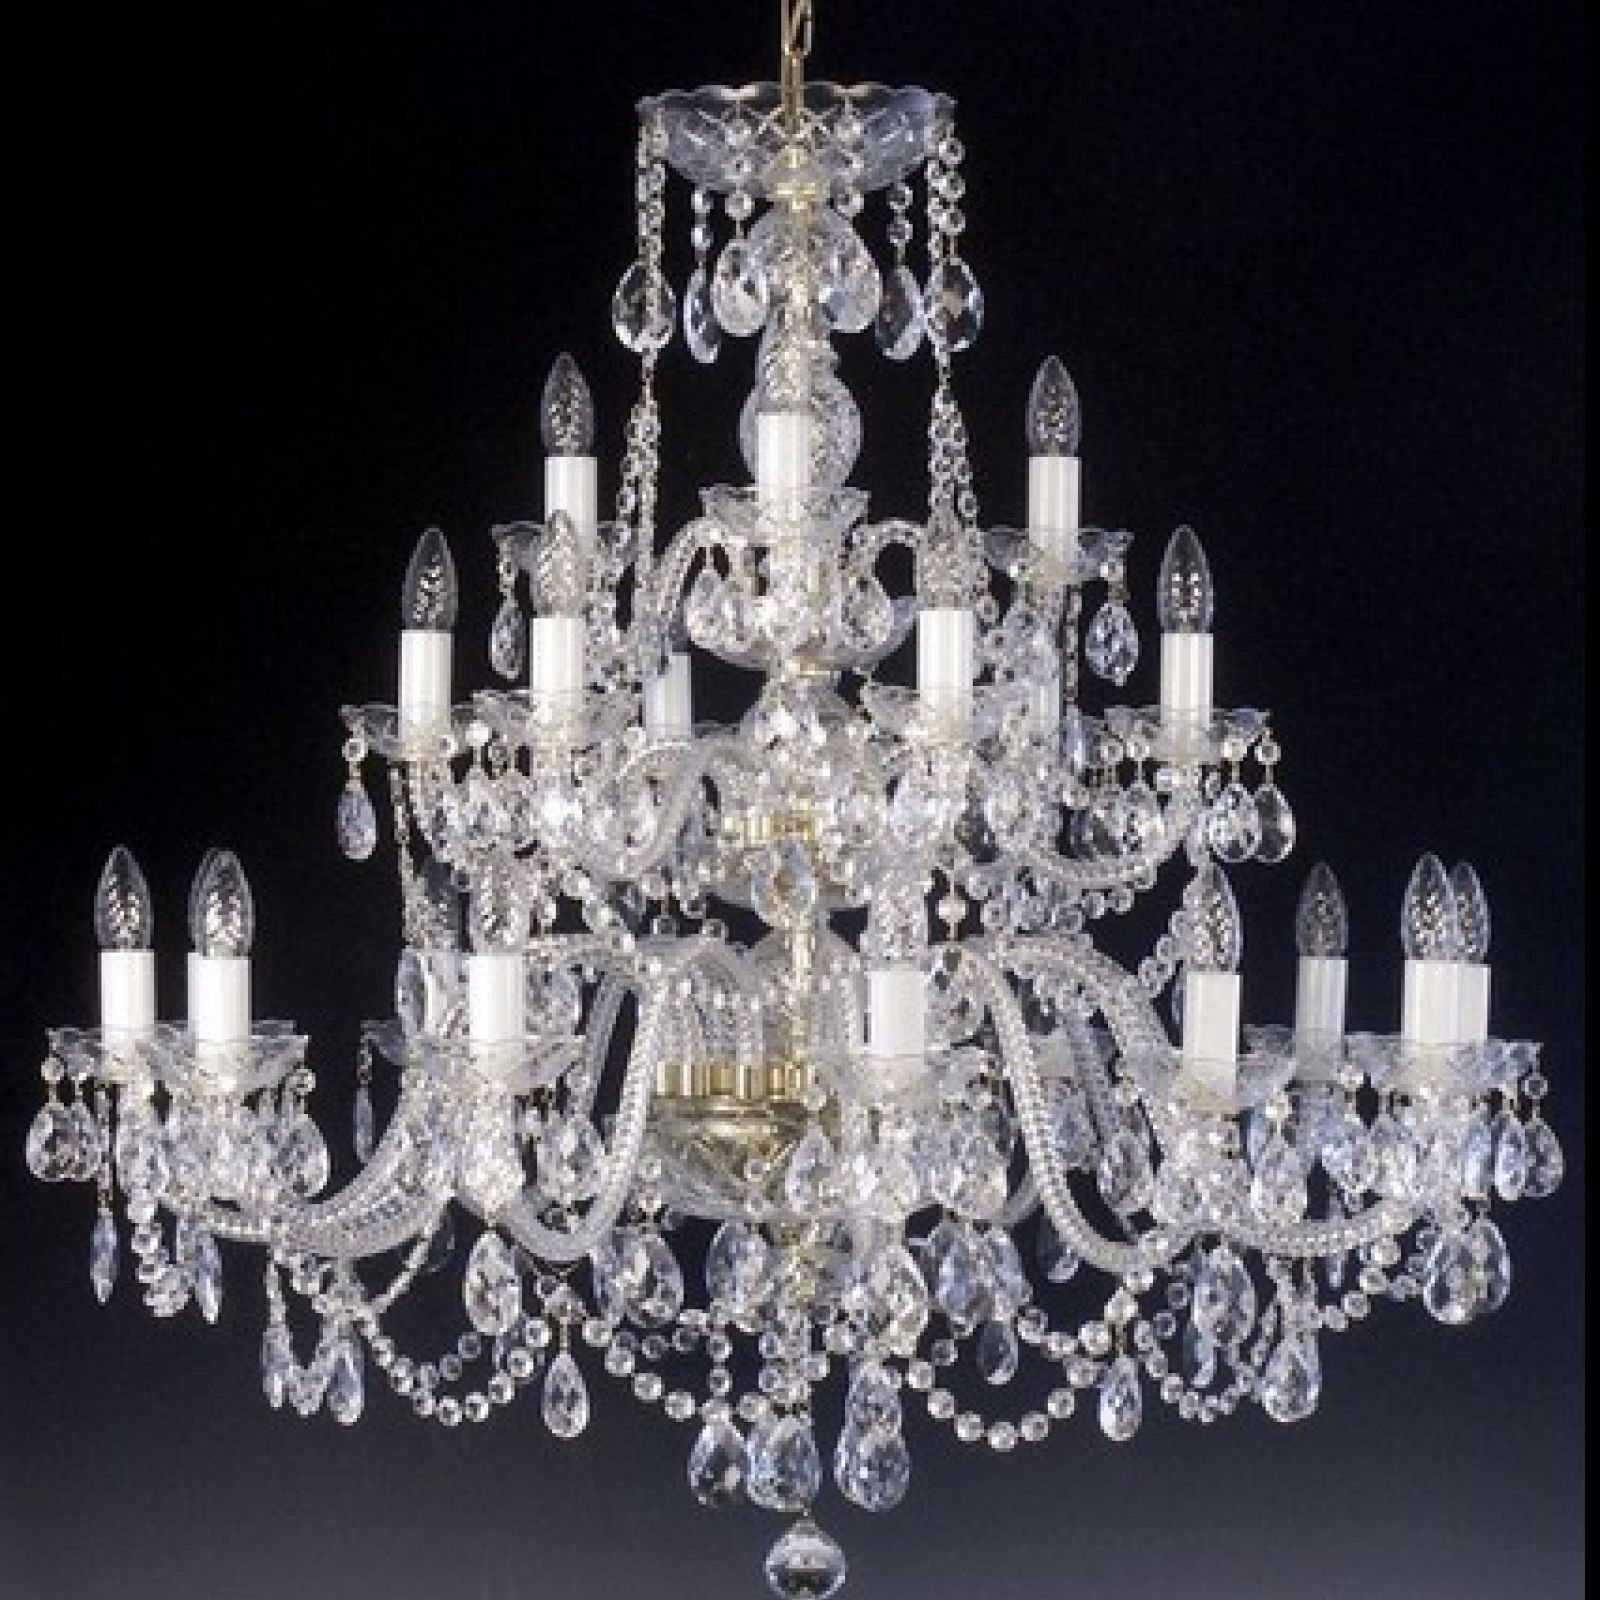 Stunning 21 arm chandelier